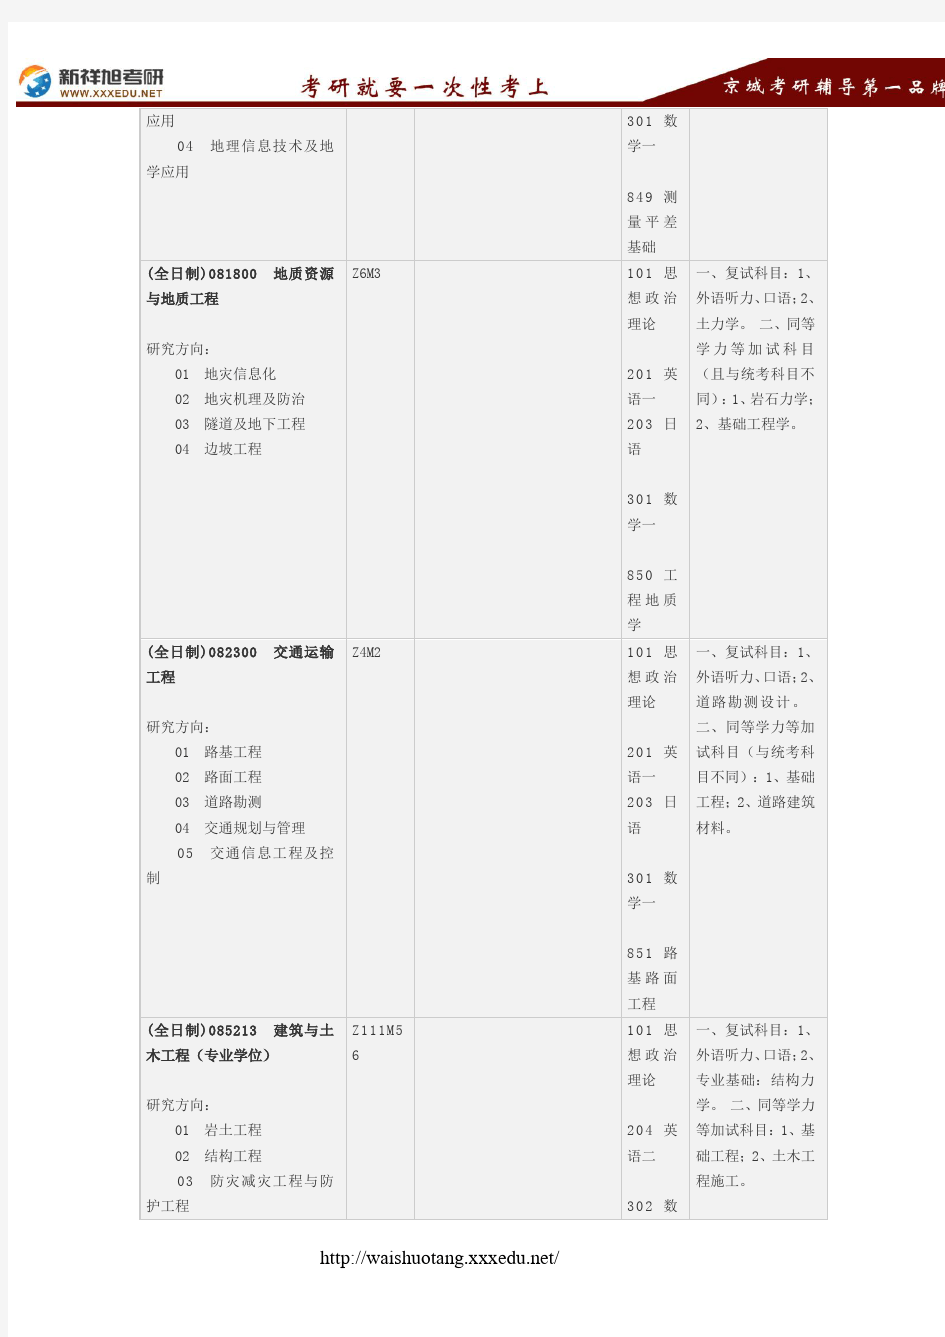 2018重庆大学土木工程学院考研考试科目、招生人数